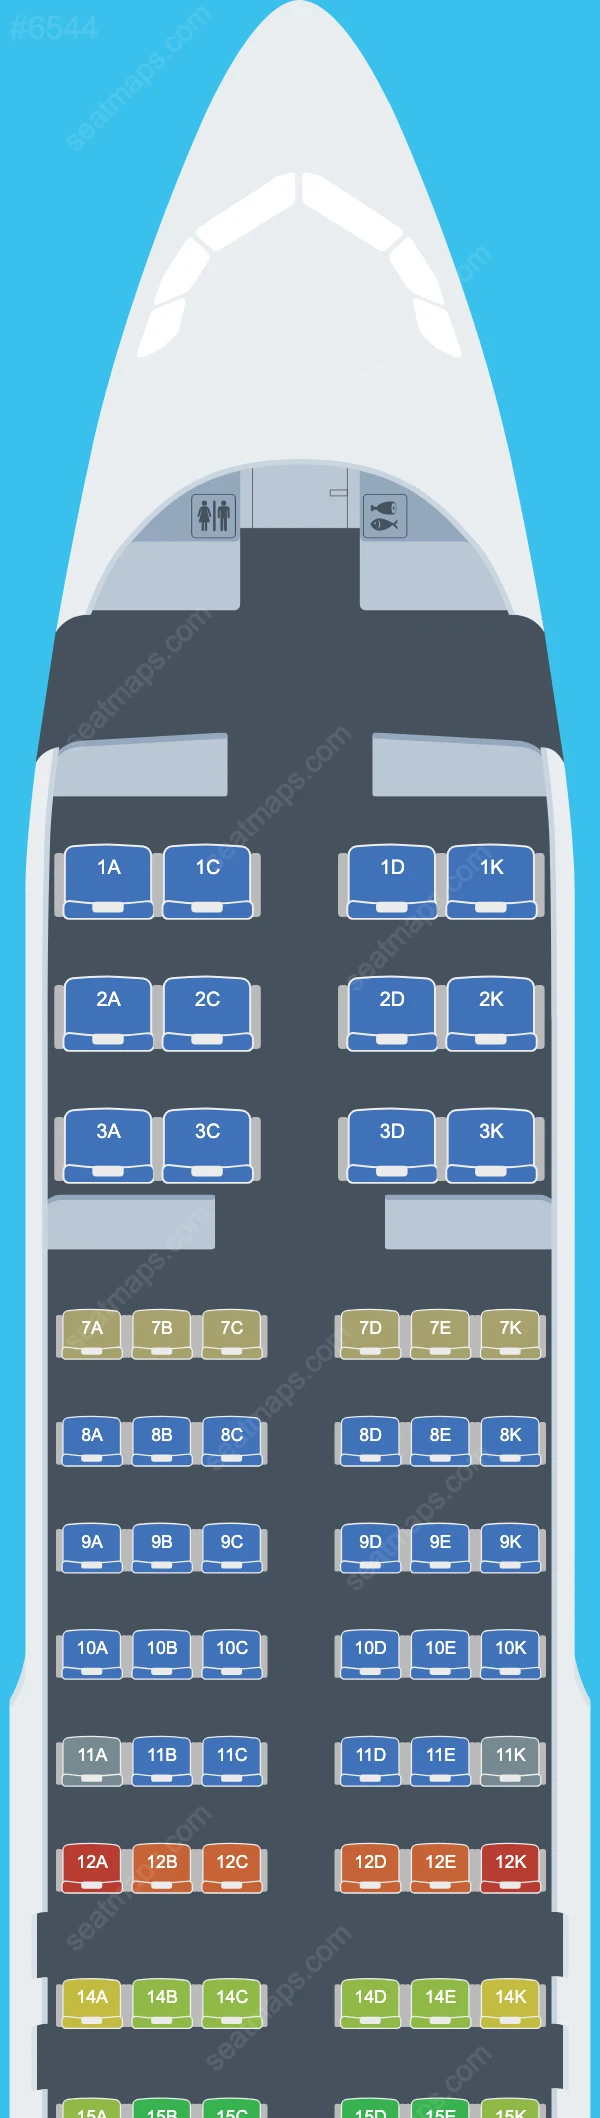 Avianca Ecuador Airbus A320 Seat Maps A320-200 V.2